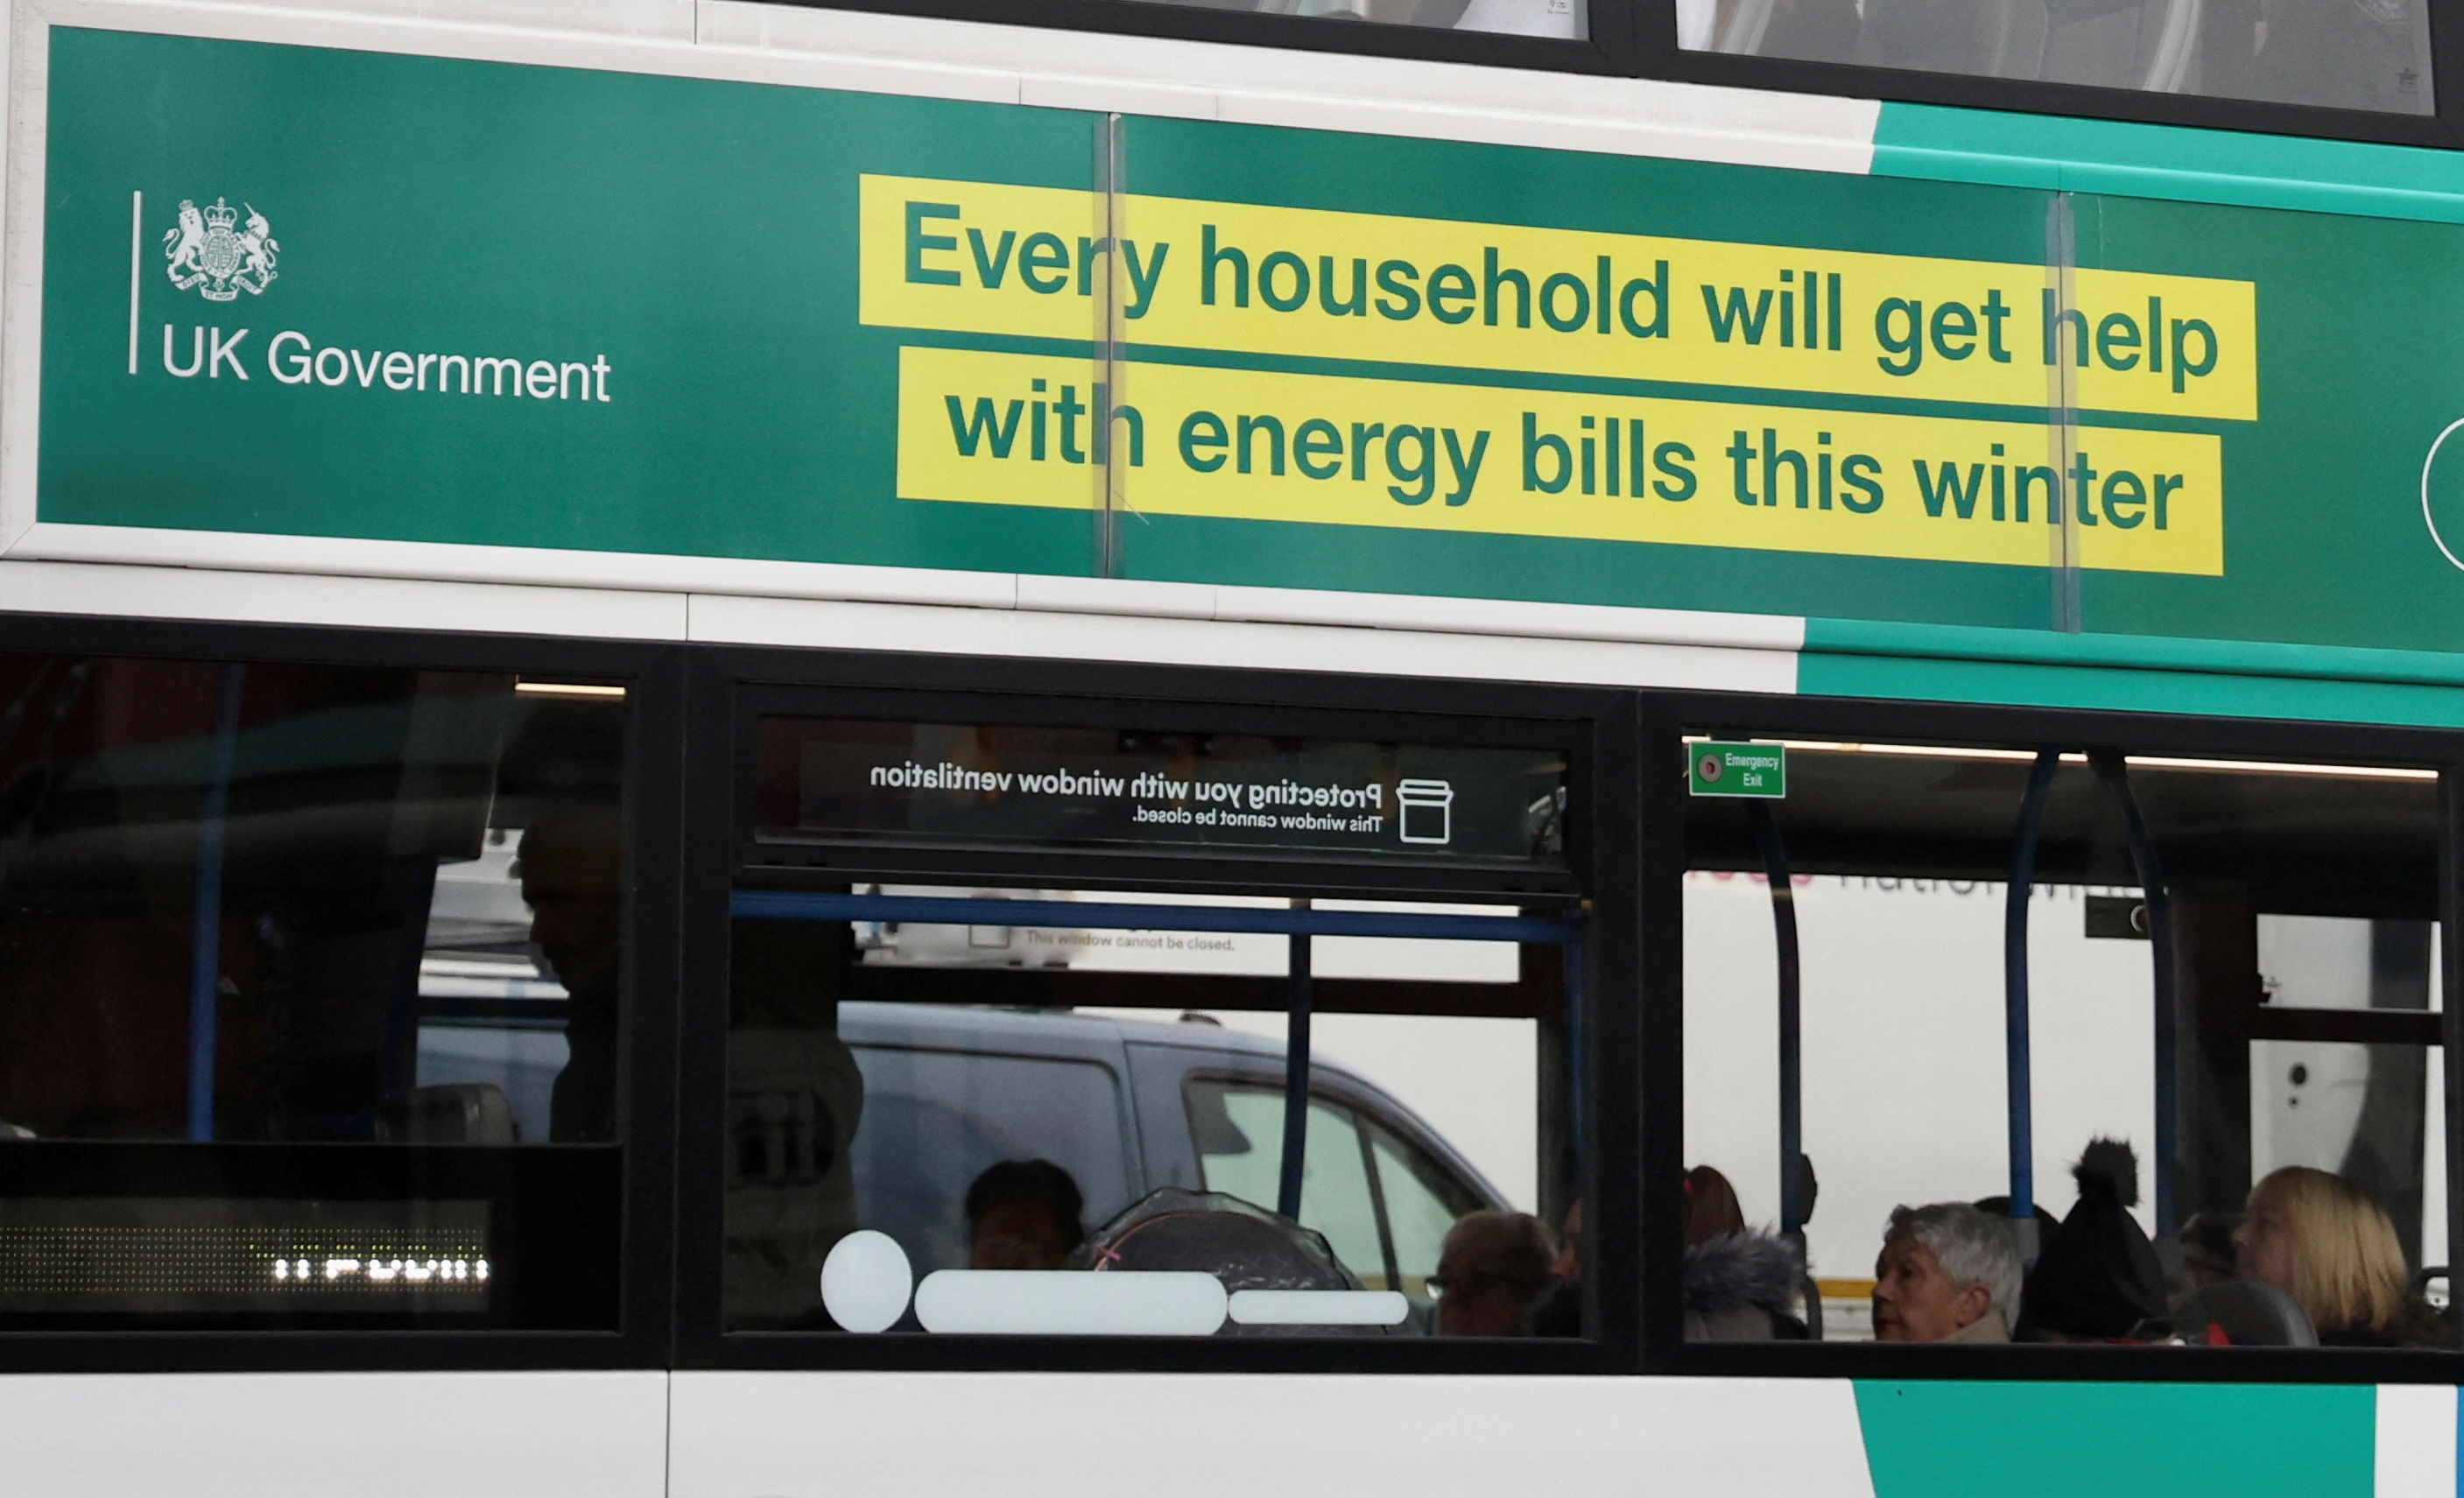 Op de zijkant van een bus in Stockport is een advertentie van de Britse regering te zien waarin mensen worden geholpen met de energierekening in de winter